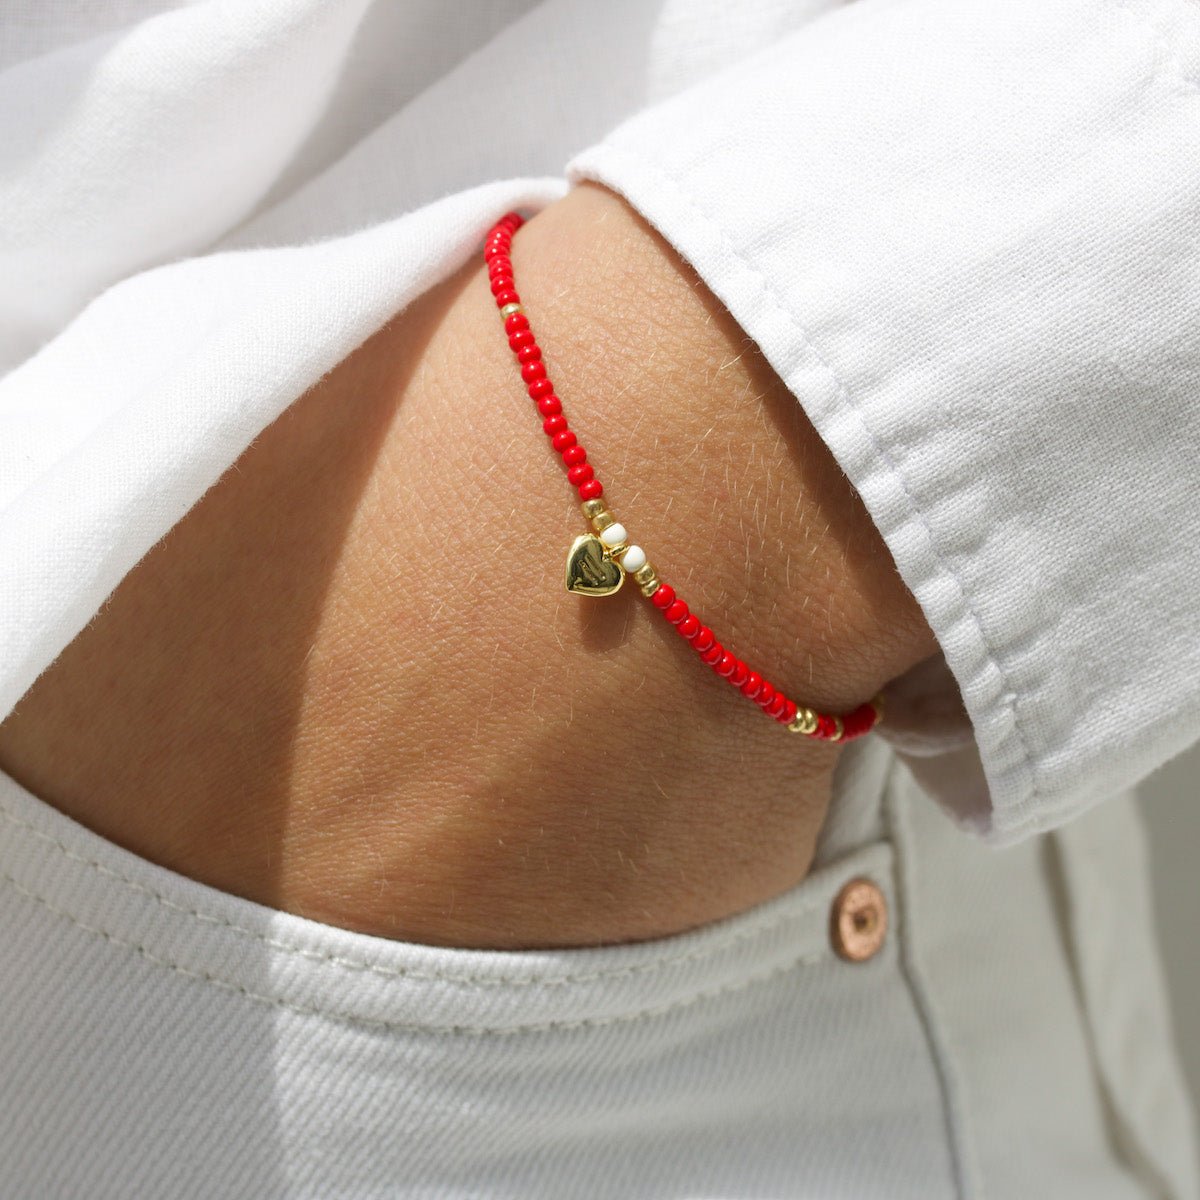 Red beaded bracelet for Gender Justice